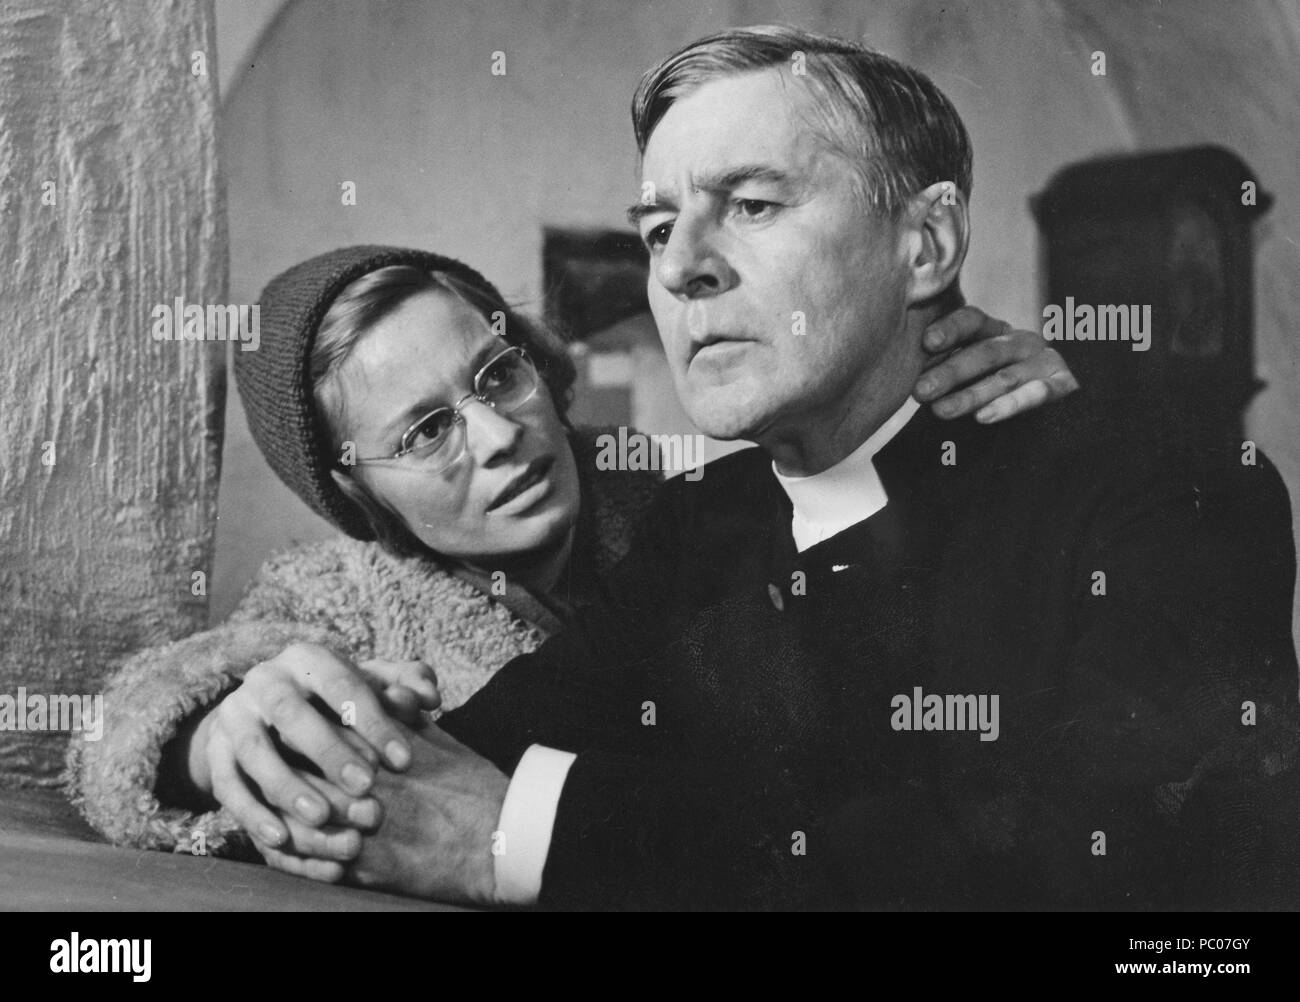 Lumière d'hiver. Film Suédois d'Ingmar Bergman de 1963 avec Ingrid Thulin et Gunnar Björnstrand. Ingmar Bergman. 1918-2007. Directeur du cinéma suédois. Banque D'Images